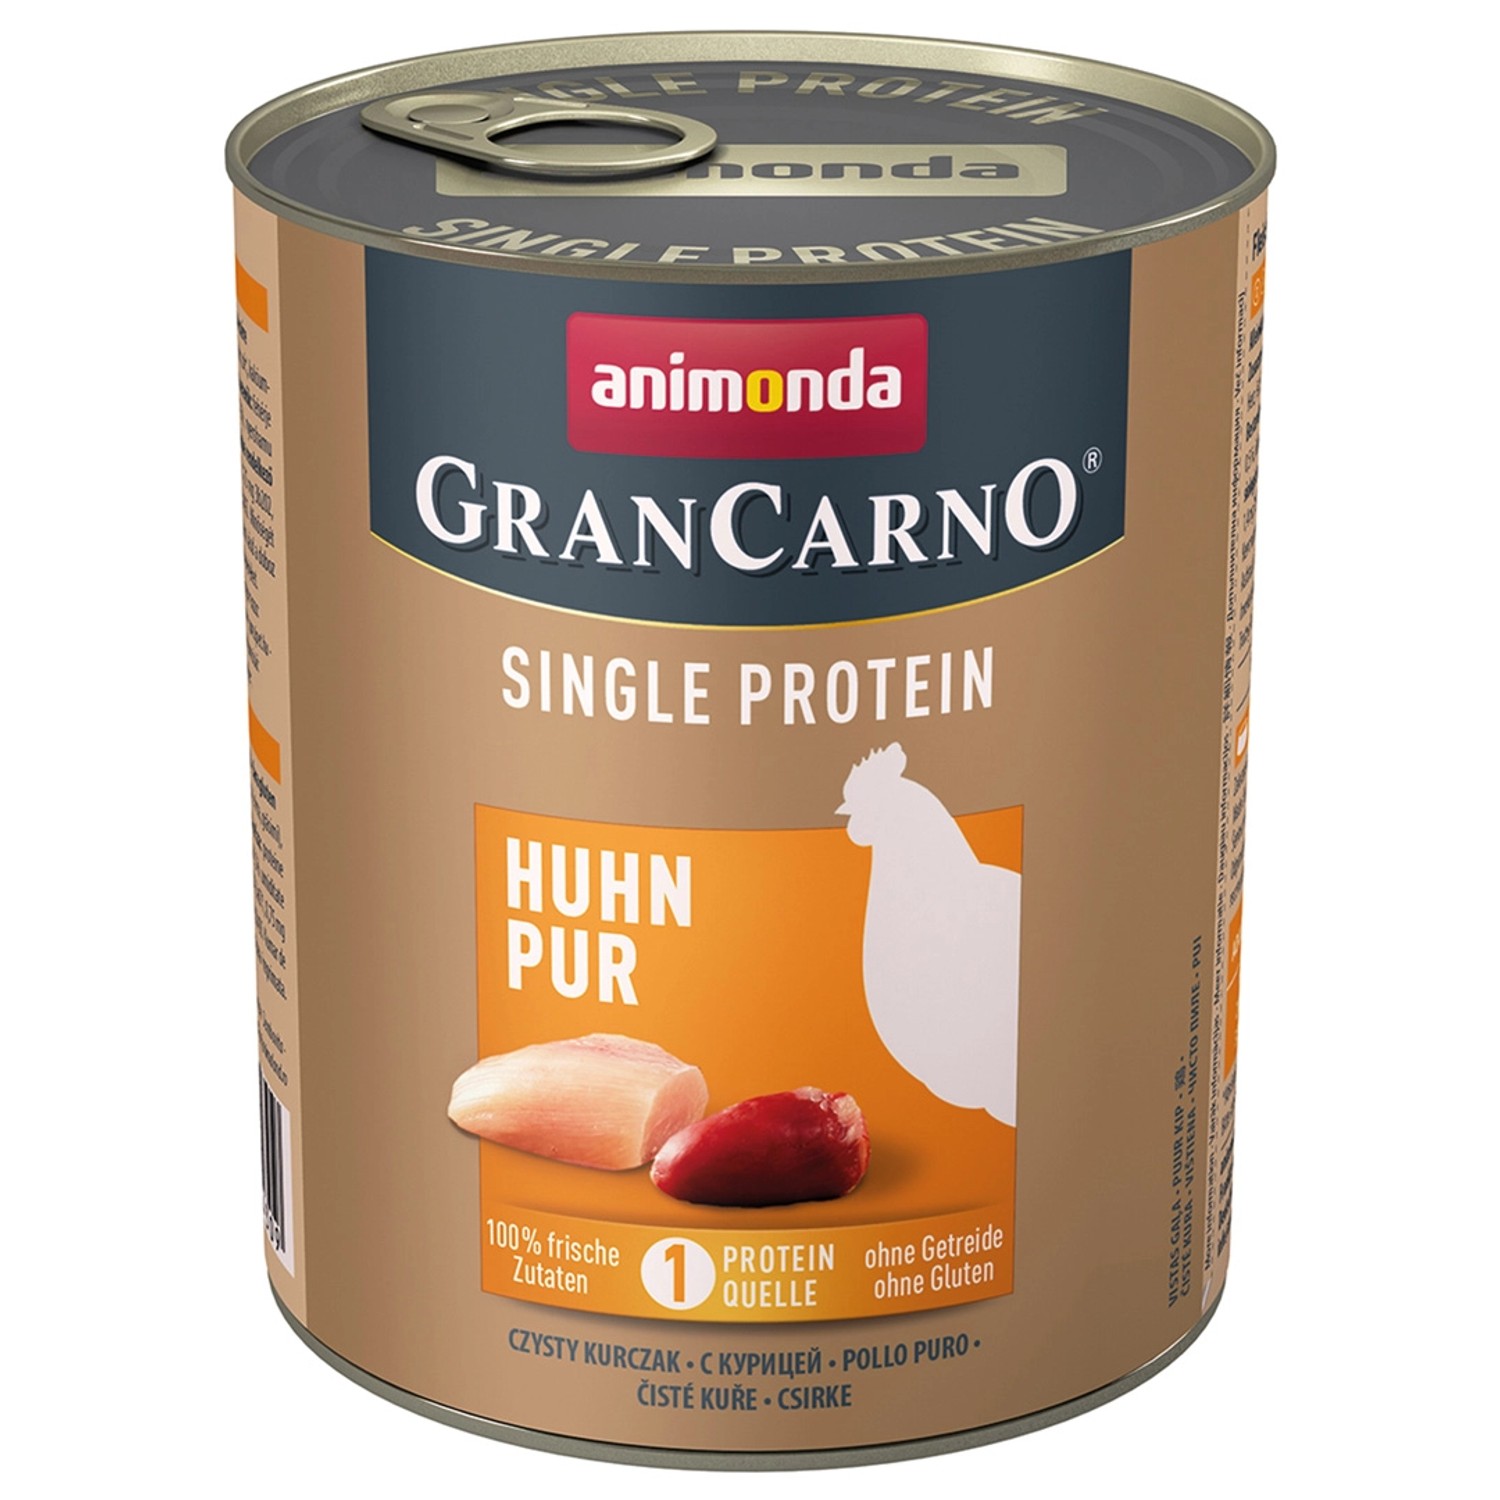 Animonda Gran Carno Single Protein Huhn Pur 800 g